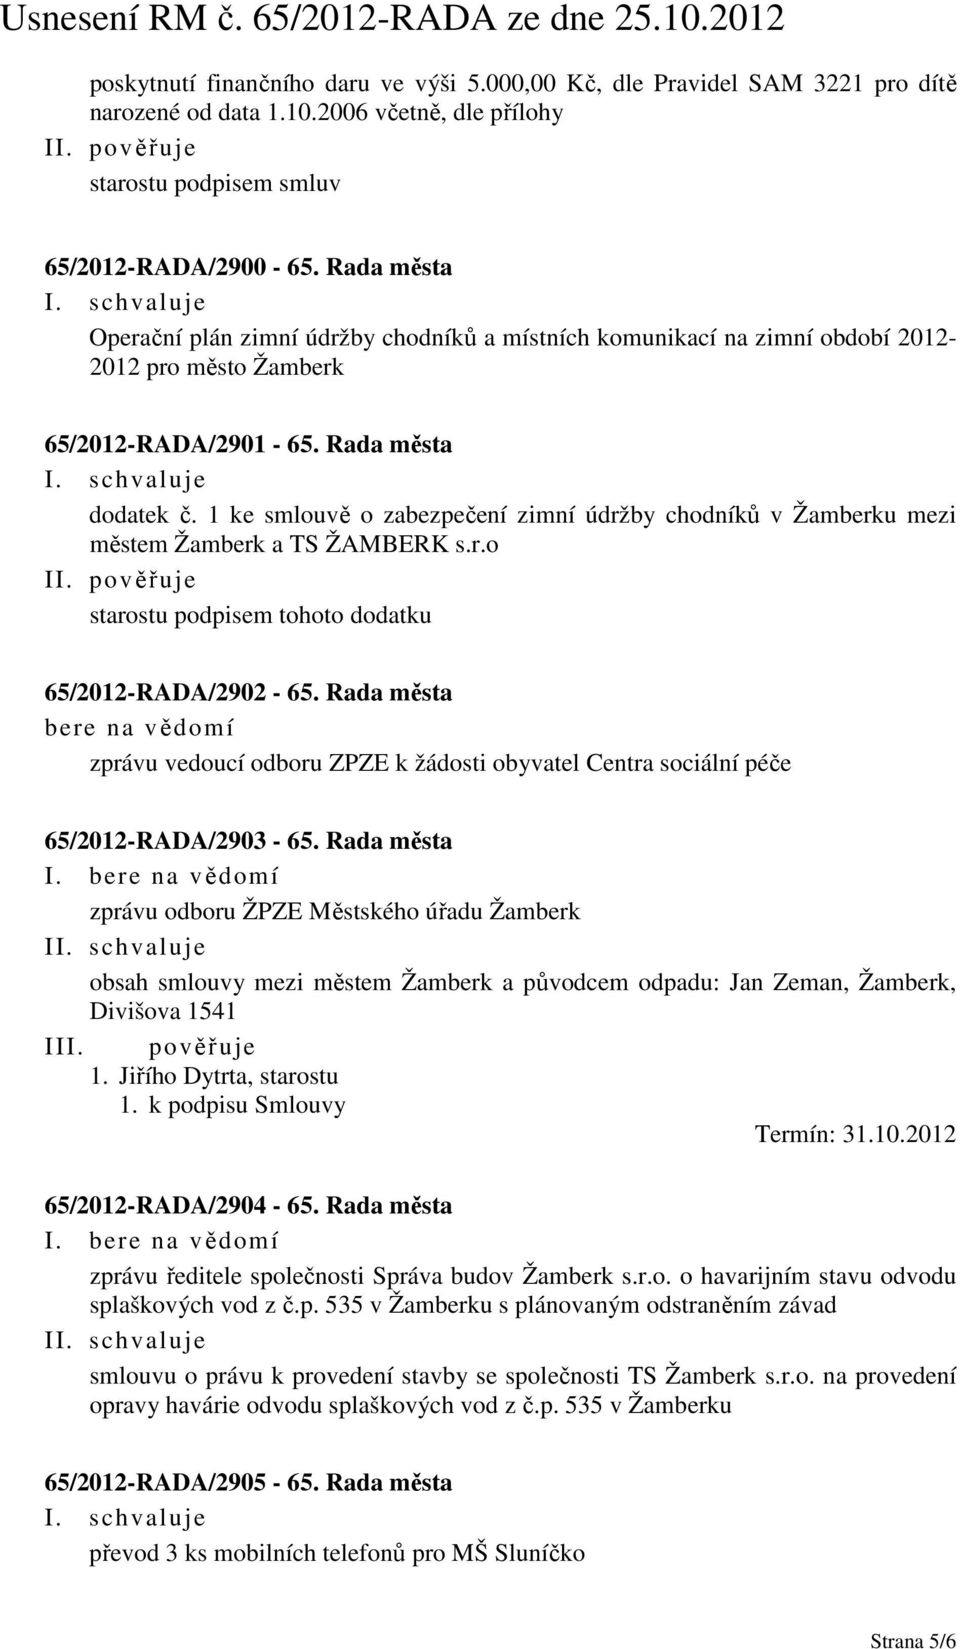 1 ke smlouvě o zabezpečení zimní údržby chodníků v Žamberku mezi městem Žamberk a TS ŽAMBERK s.r.o starostu podpisem tohoto dodatku 65/2012-RADA/2902-65.